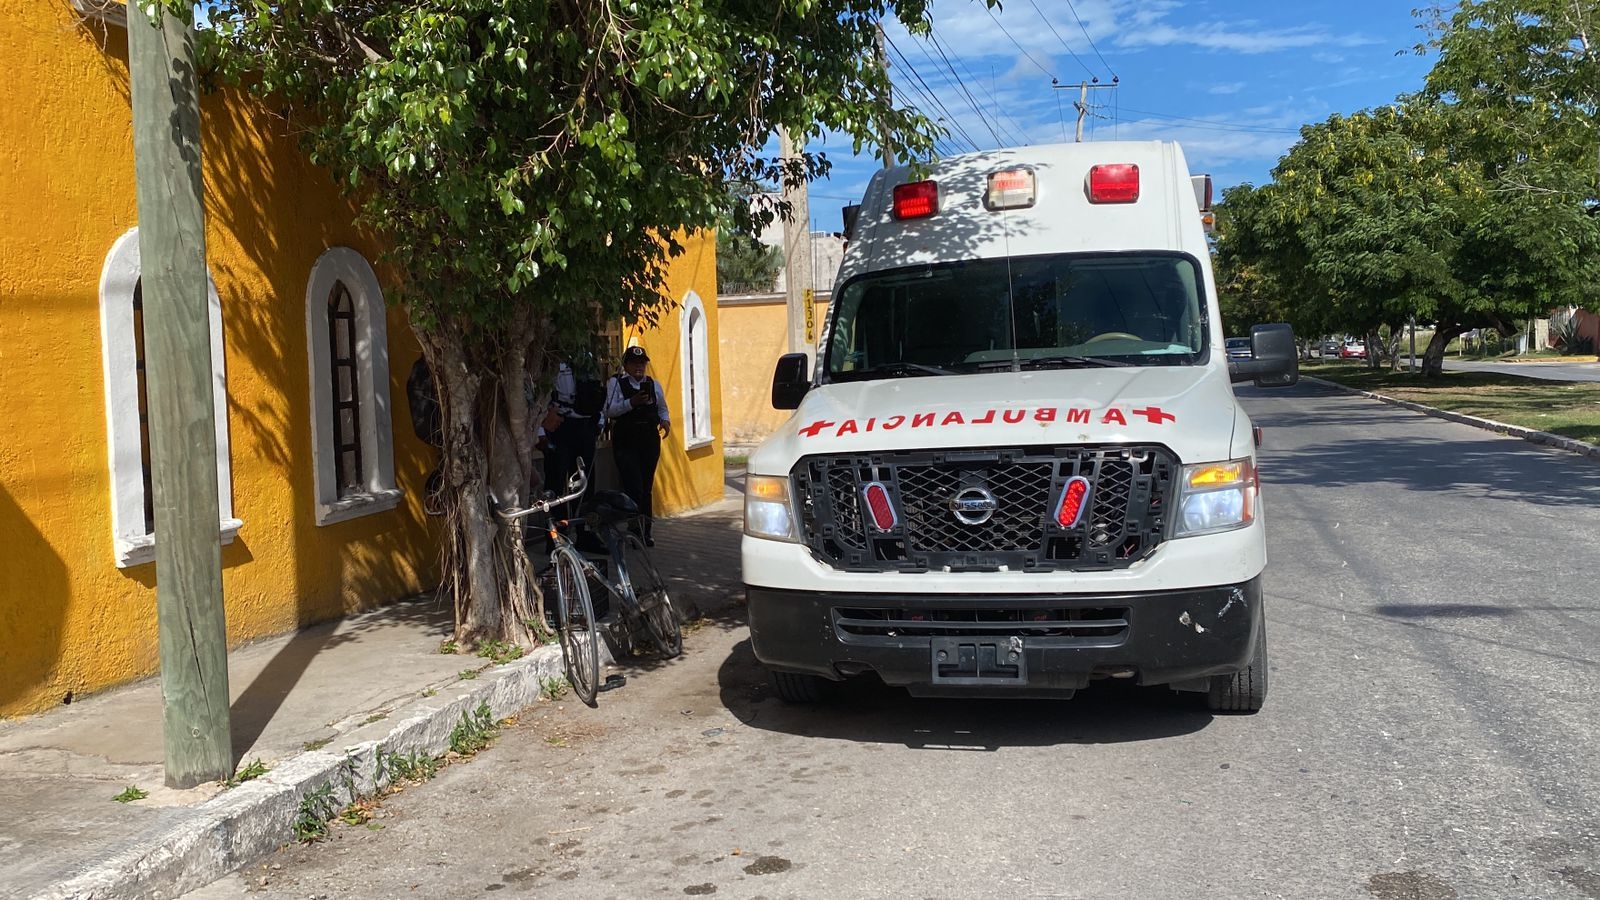 Paramédicos de la Cruz Roja Mexicana auxiliaron a los lesionados